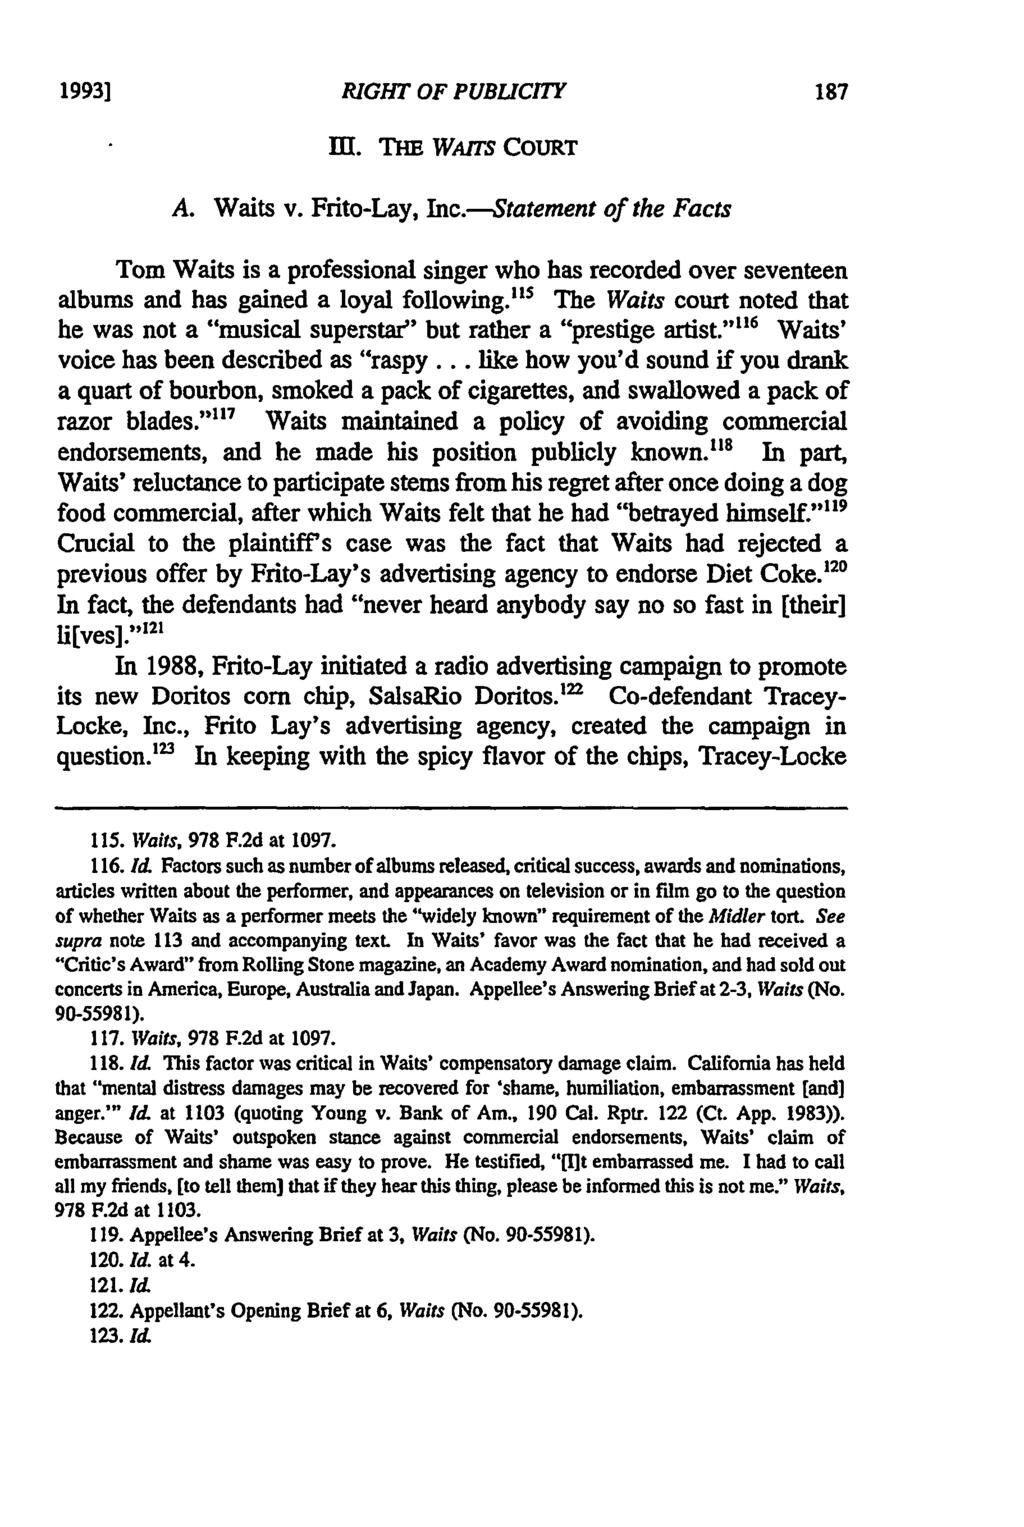 19931 RIGHT OF PUBLICITY Ill. THE WAITS COURT A. Waits v. Frito-Lay, Inc.